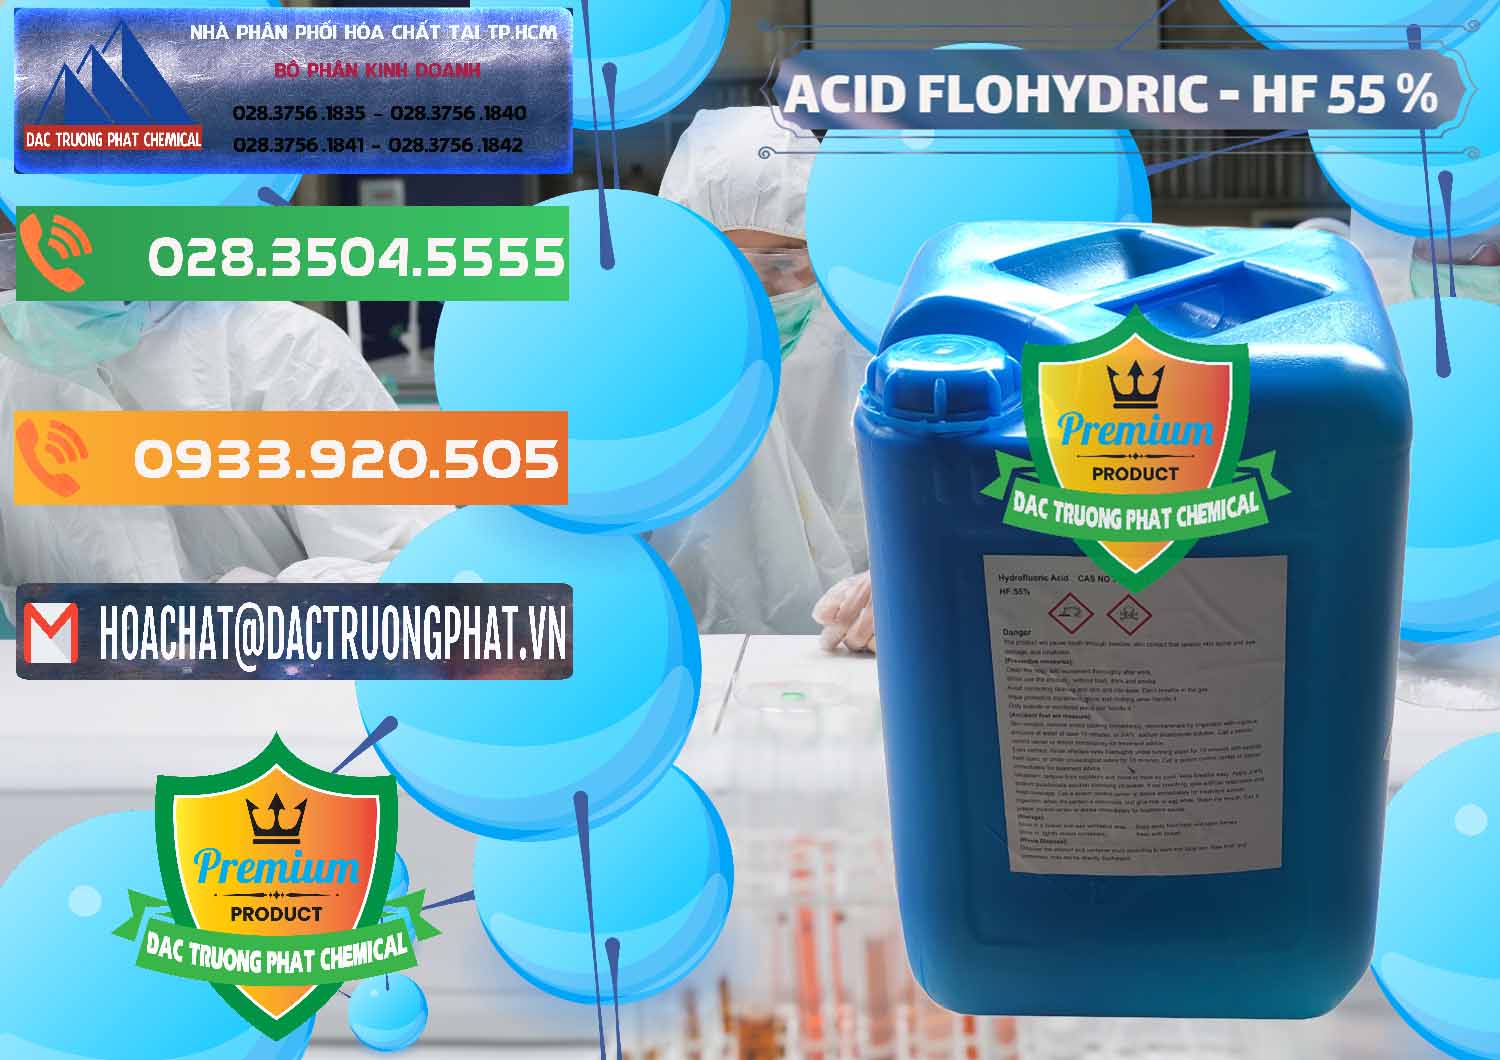 Cty cung cấp - bán Axit HF - Acid HF 55% Can Xanh Trung Quốc China - 0080 - Nơi chuyên bán & phân phối hóa chất tại TP.HCM - hoachatxulynuoc.com.vn